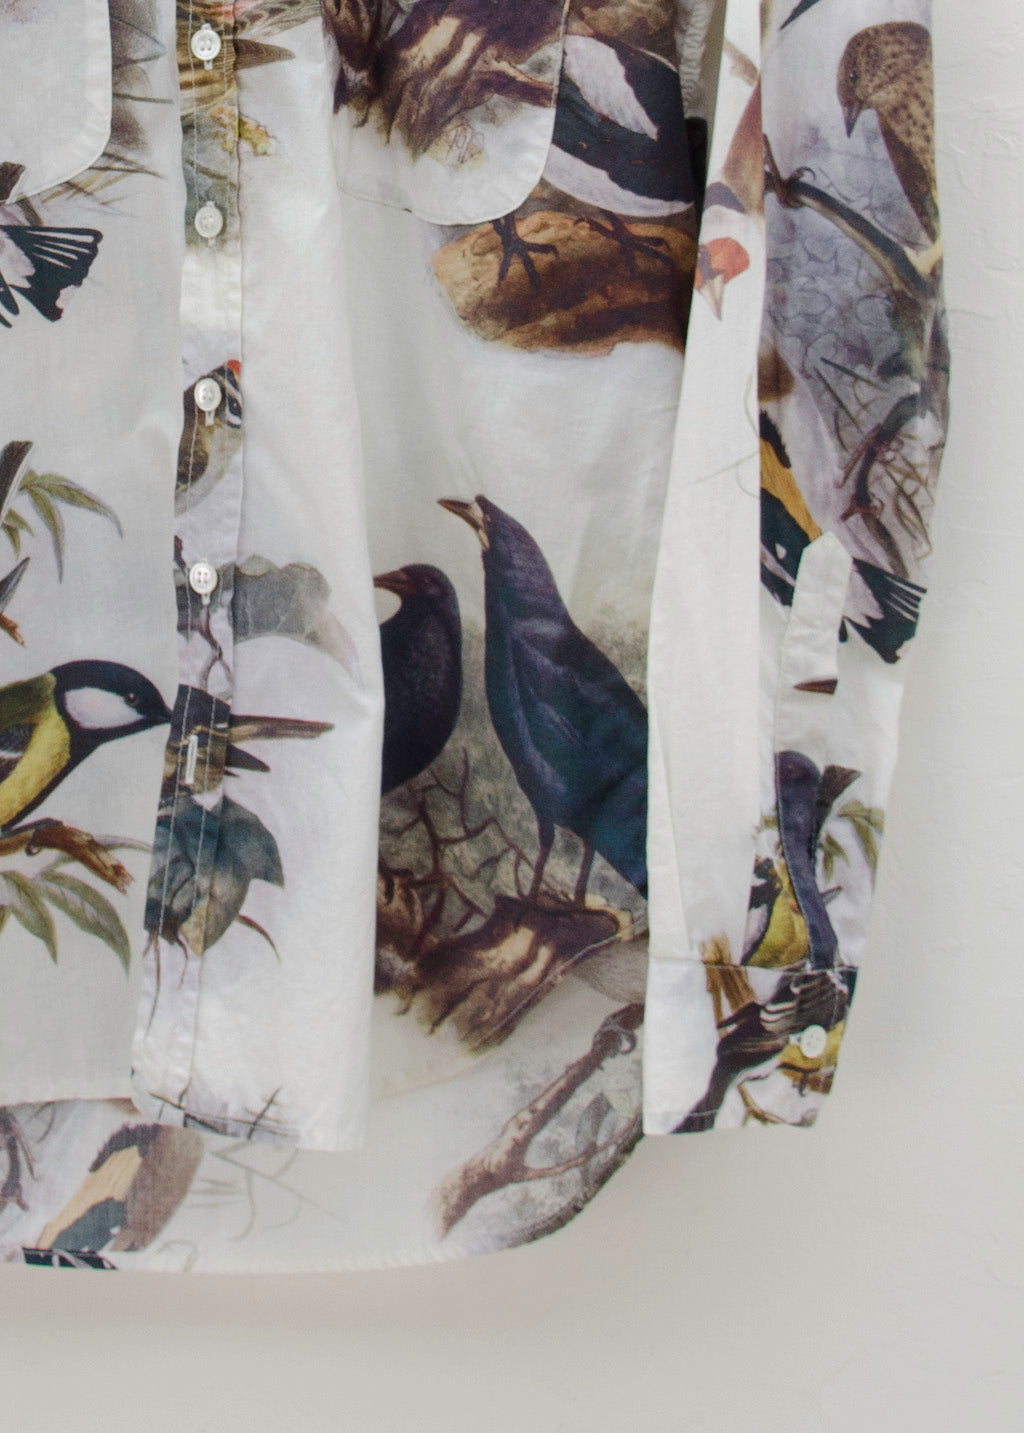 PAUL HARNDEN 2014SS Birds Print Shirt